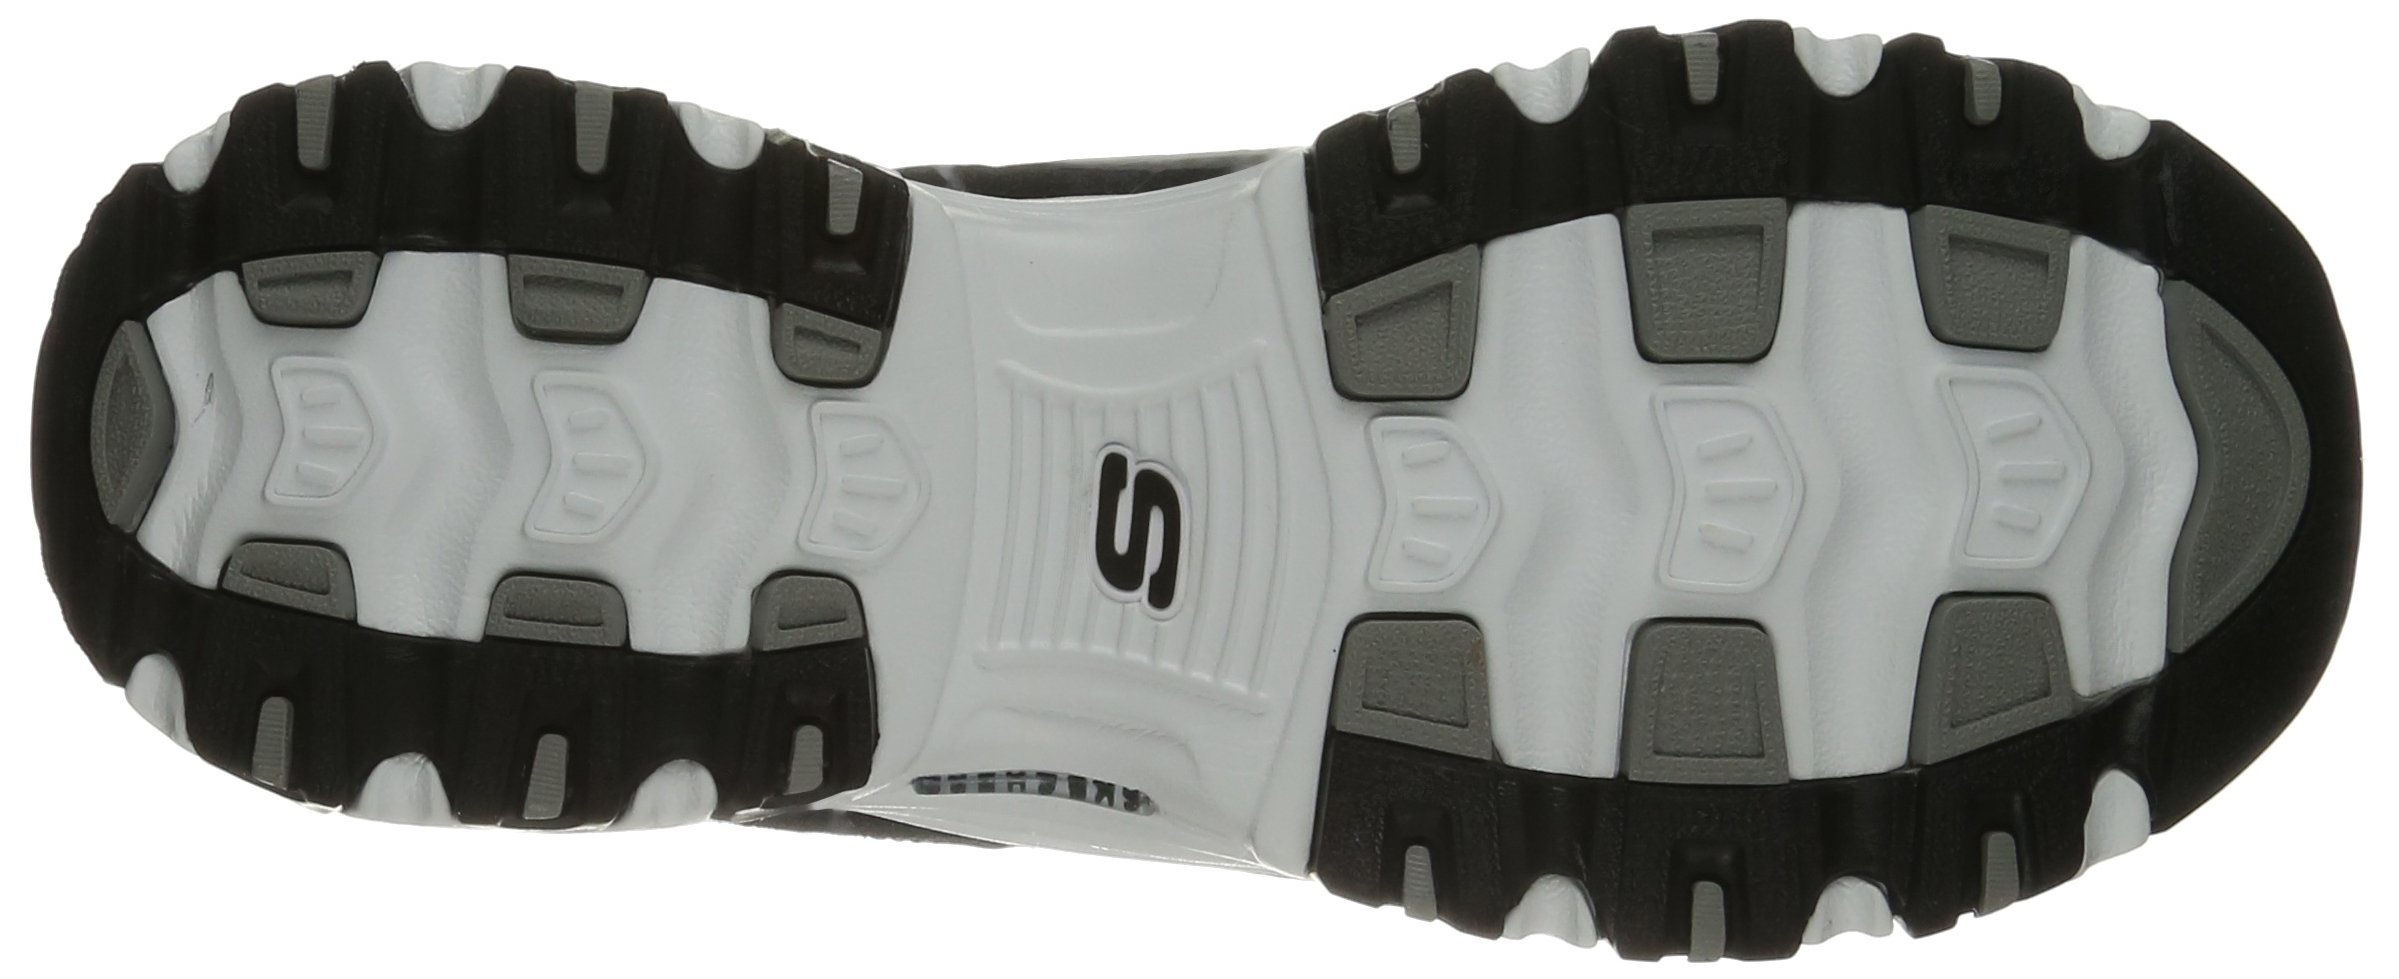 Skechers Sport Women's D'Lites Memory Foam Lace-up Sneaker,Me Time Black/White,7 W US